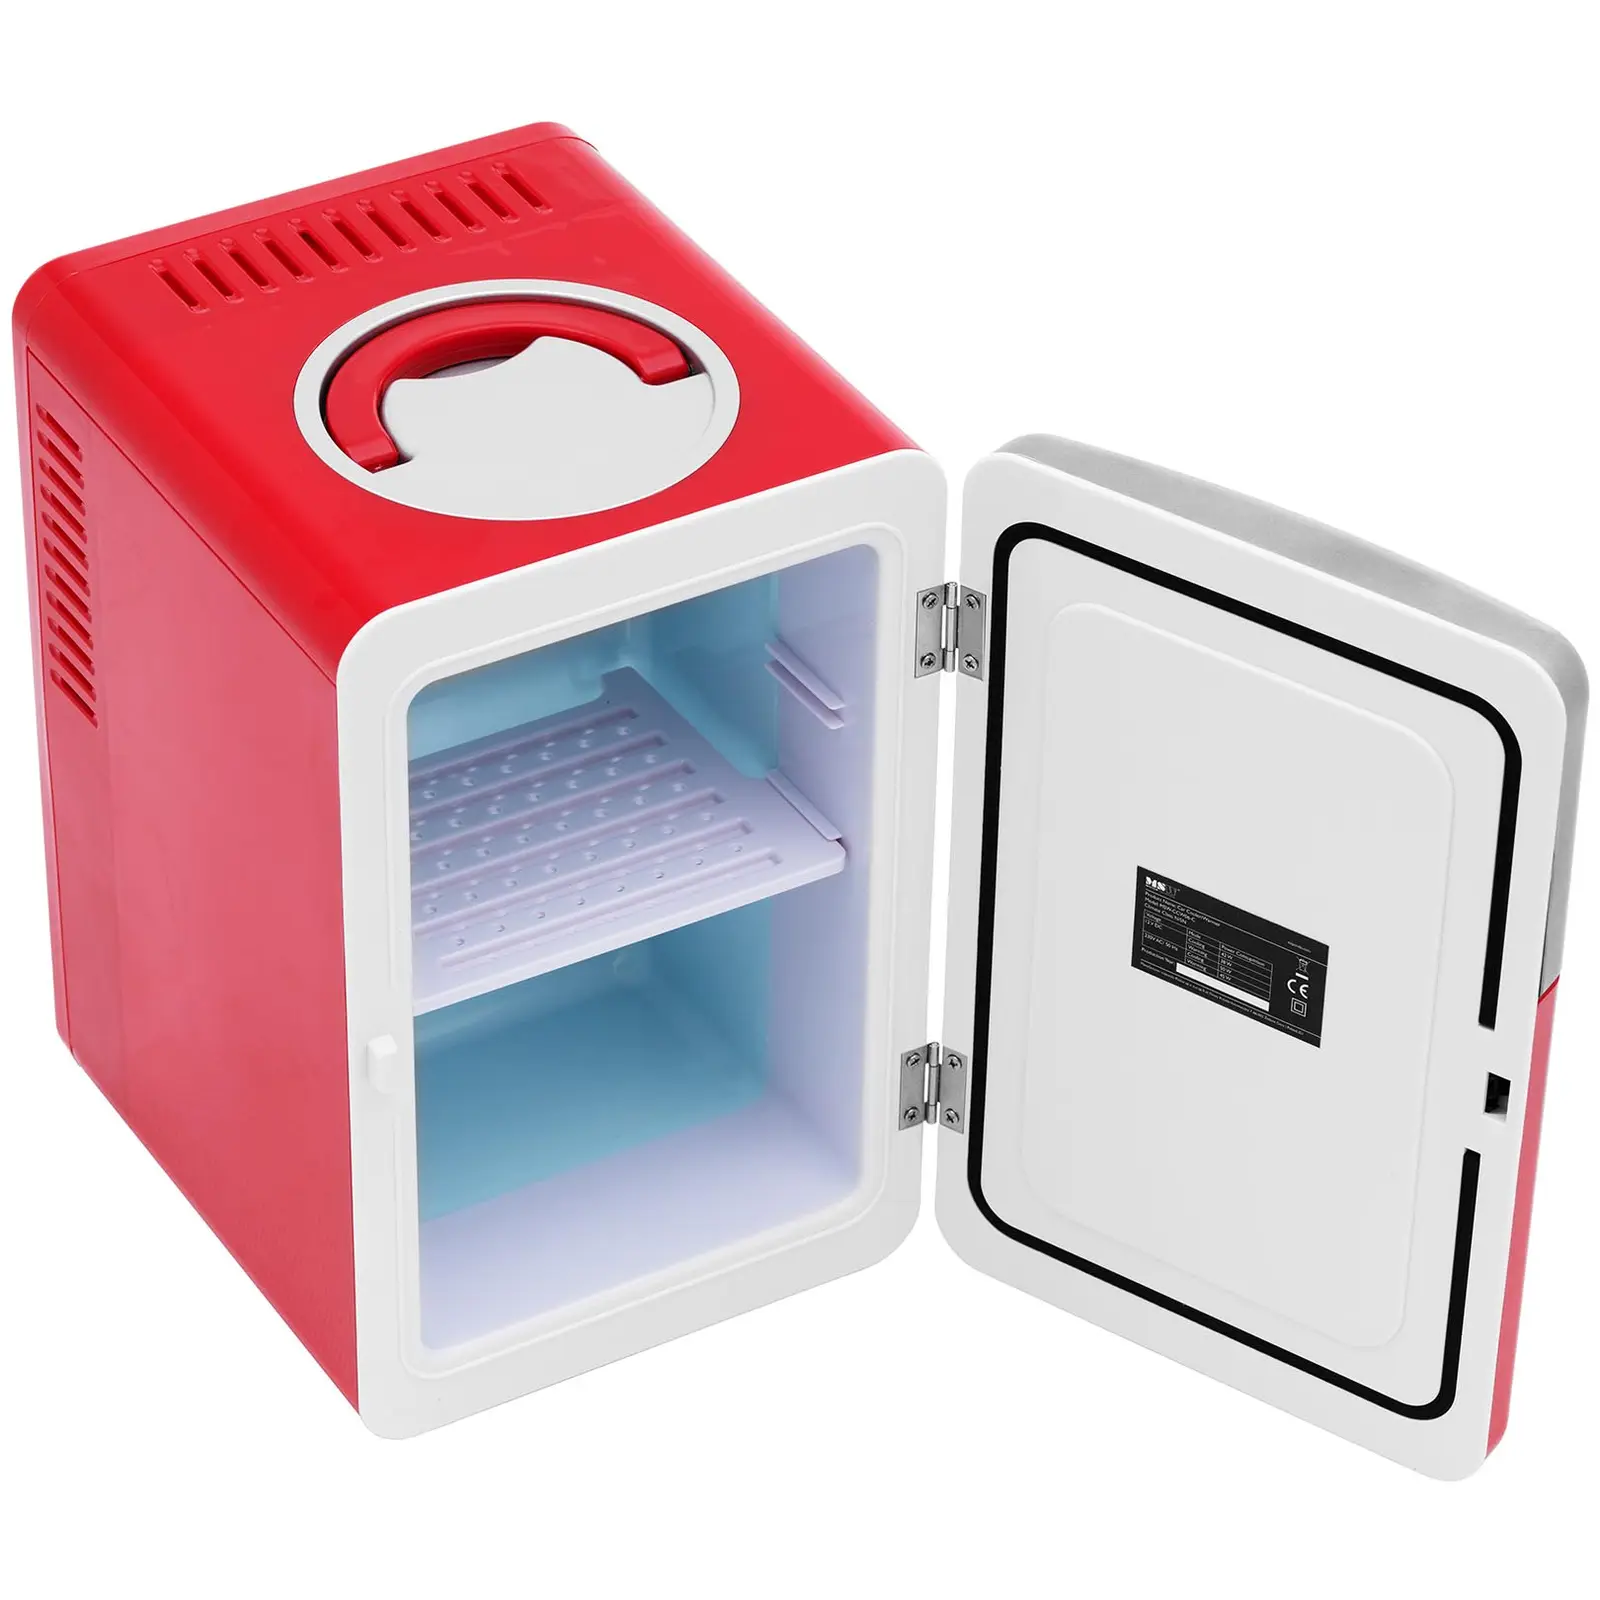 Mini frigo 12 V / 230 V - 2 in 1 con funzione di mantenimento del calore - 6 L - Rosso, argento